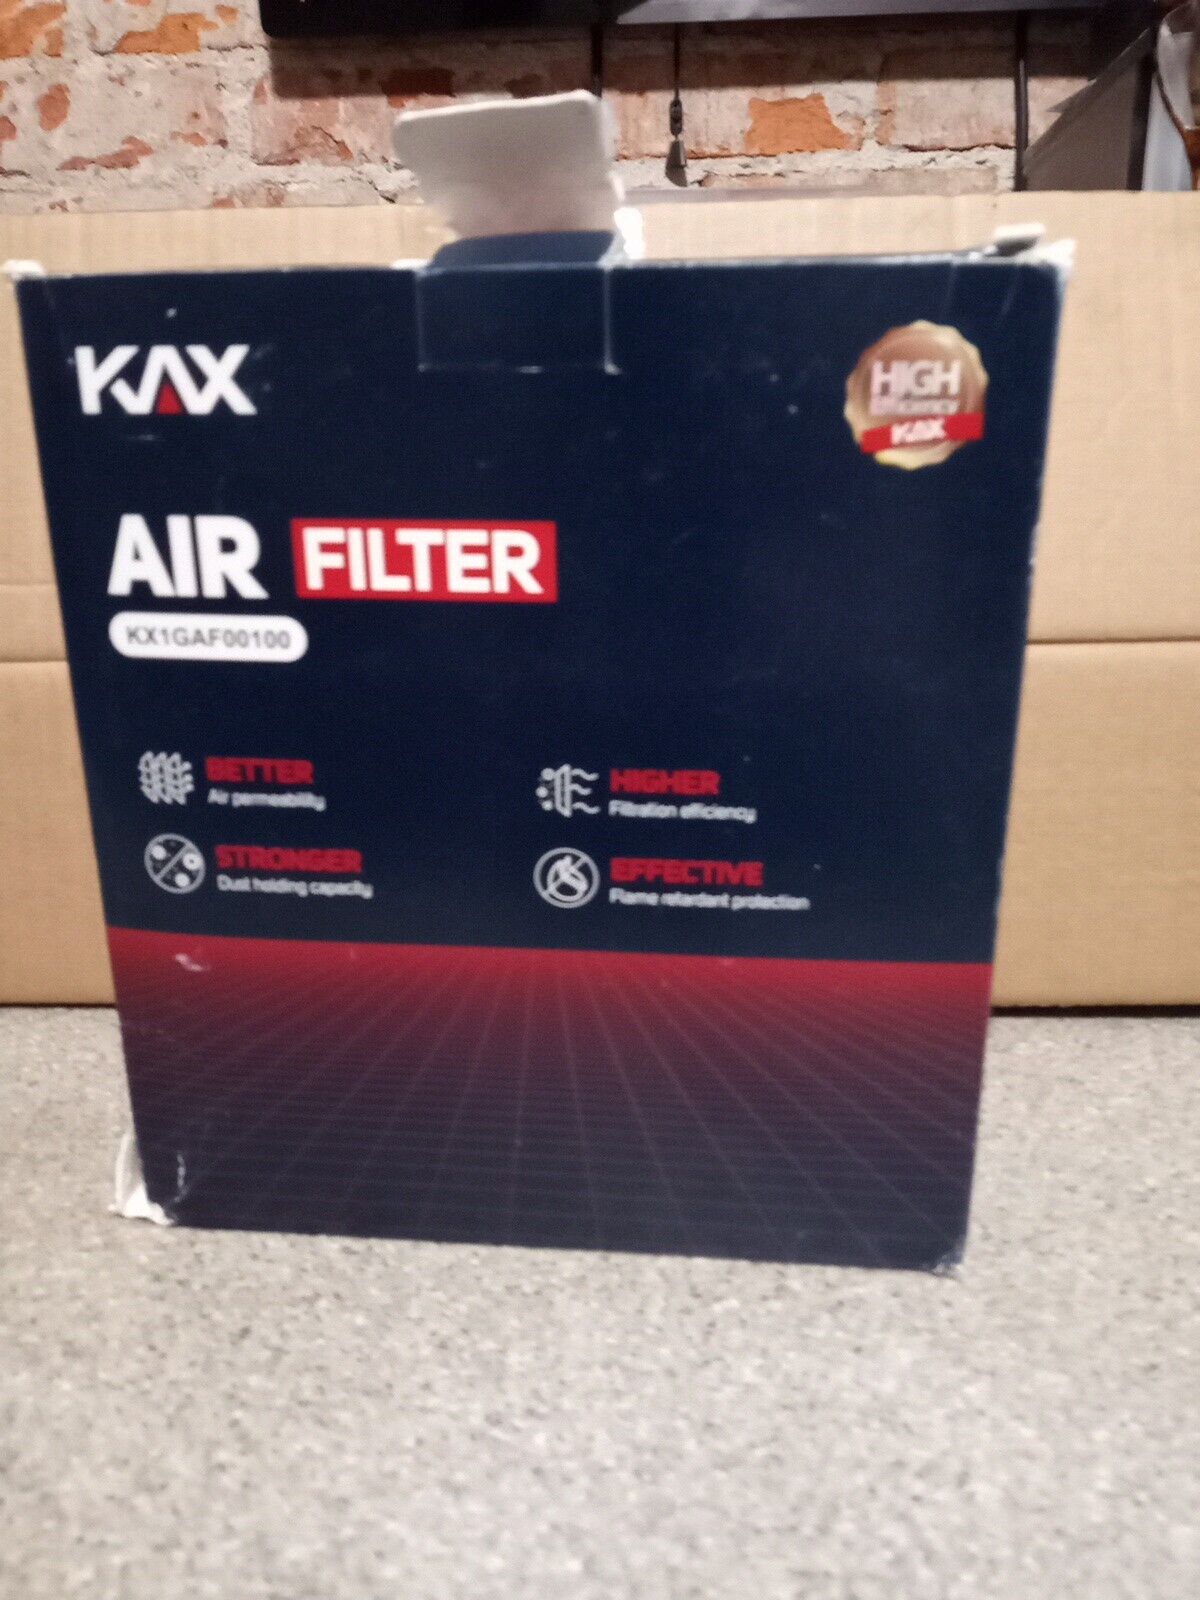 KAX Air Filter KX1GAF00100